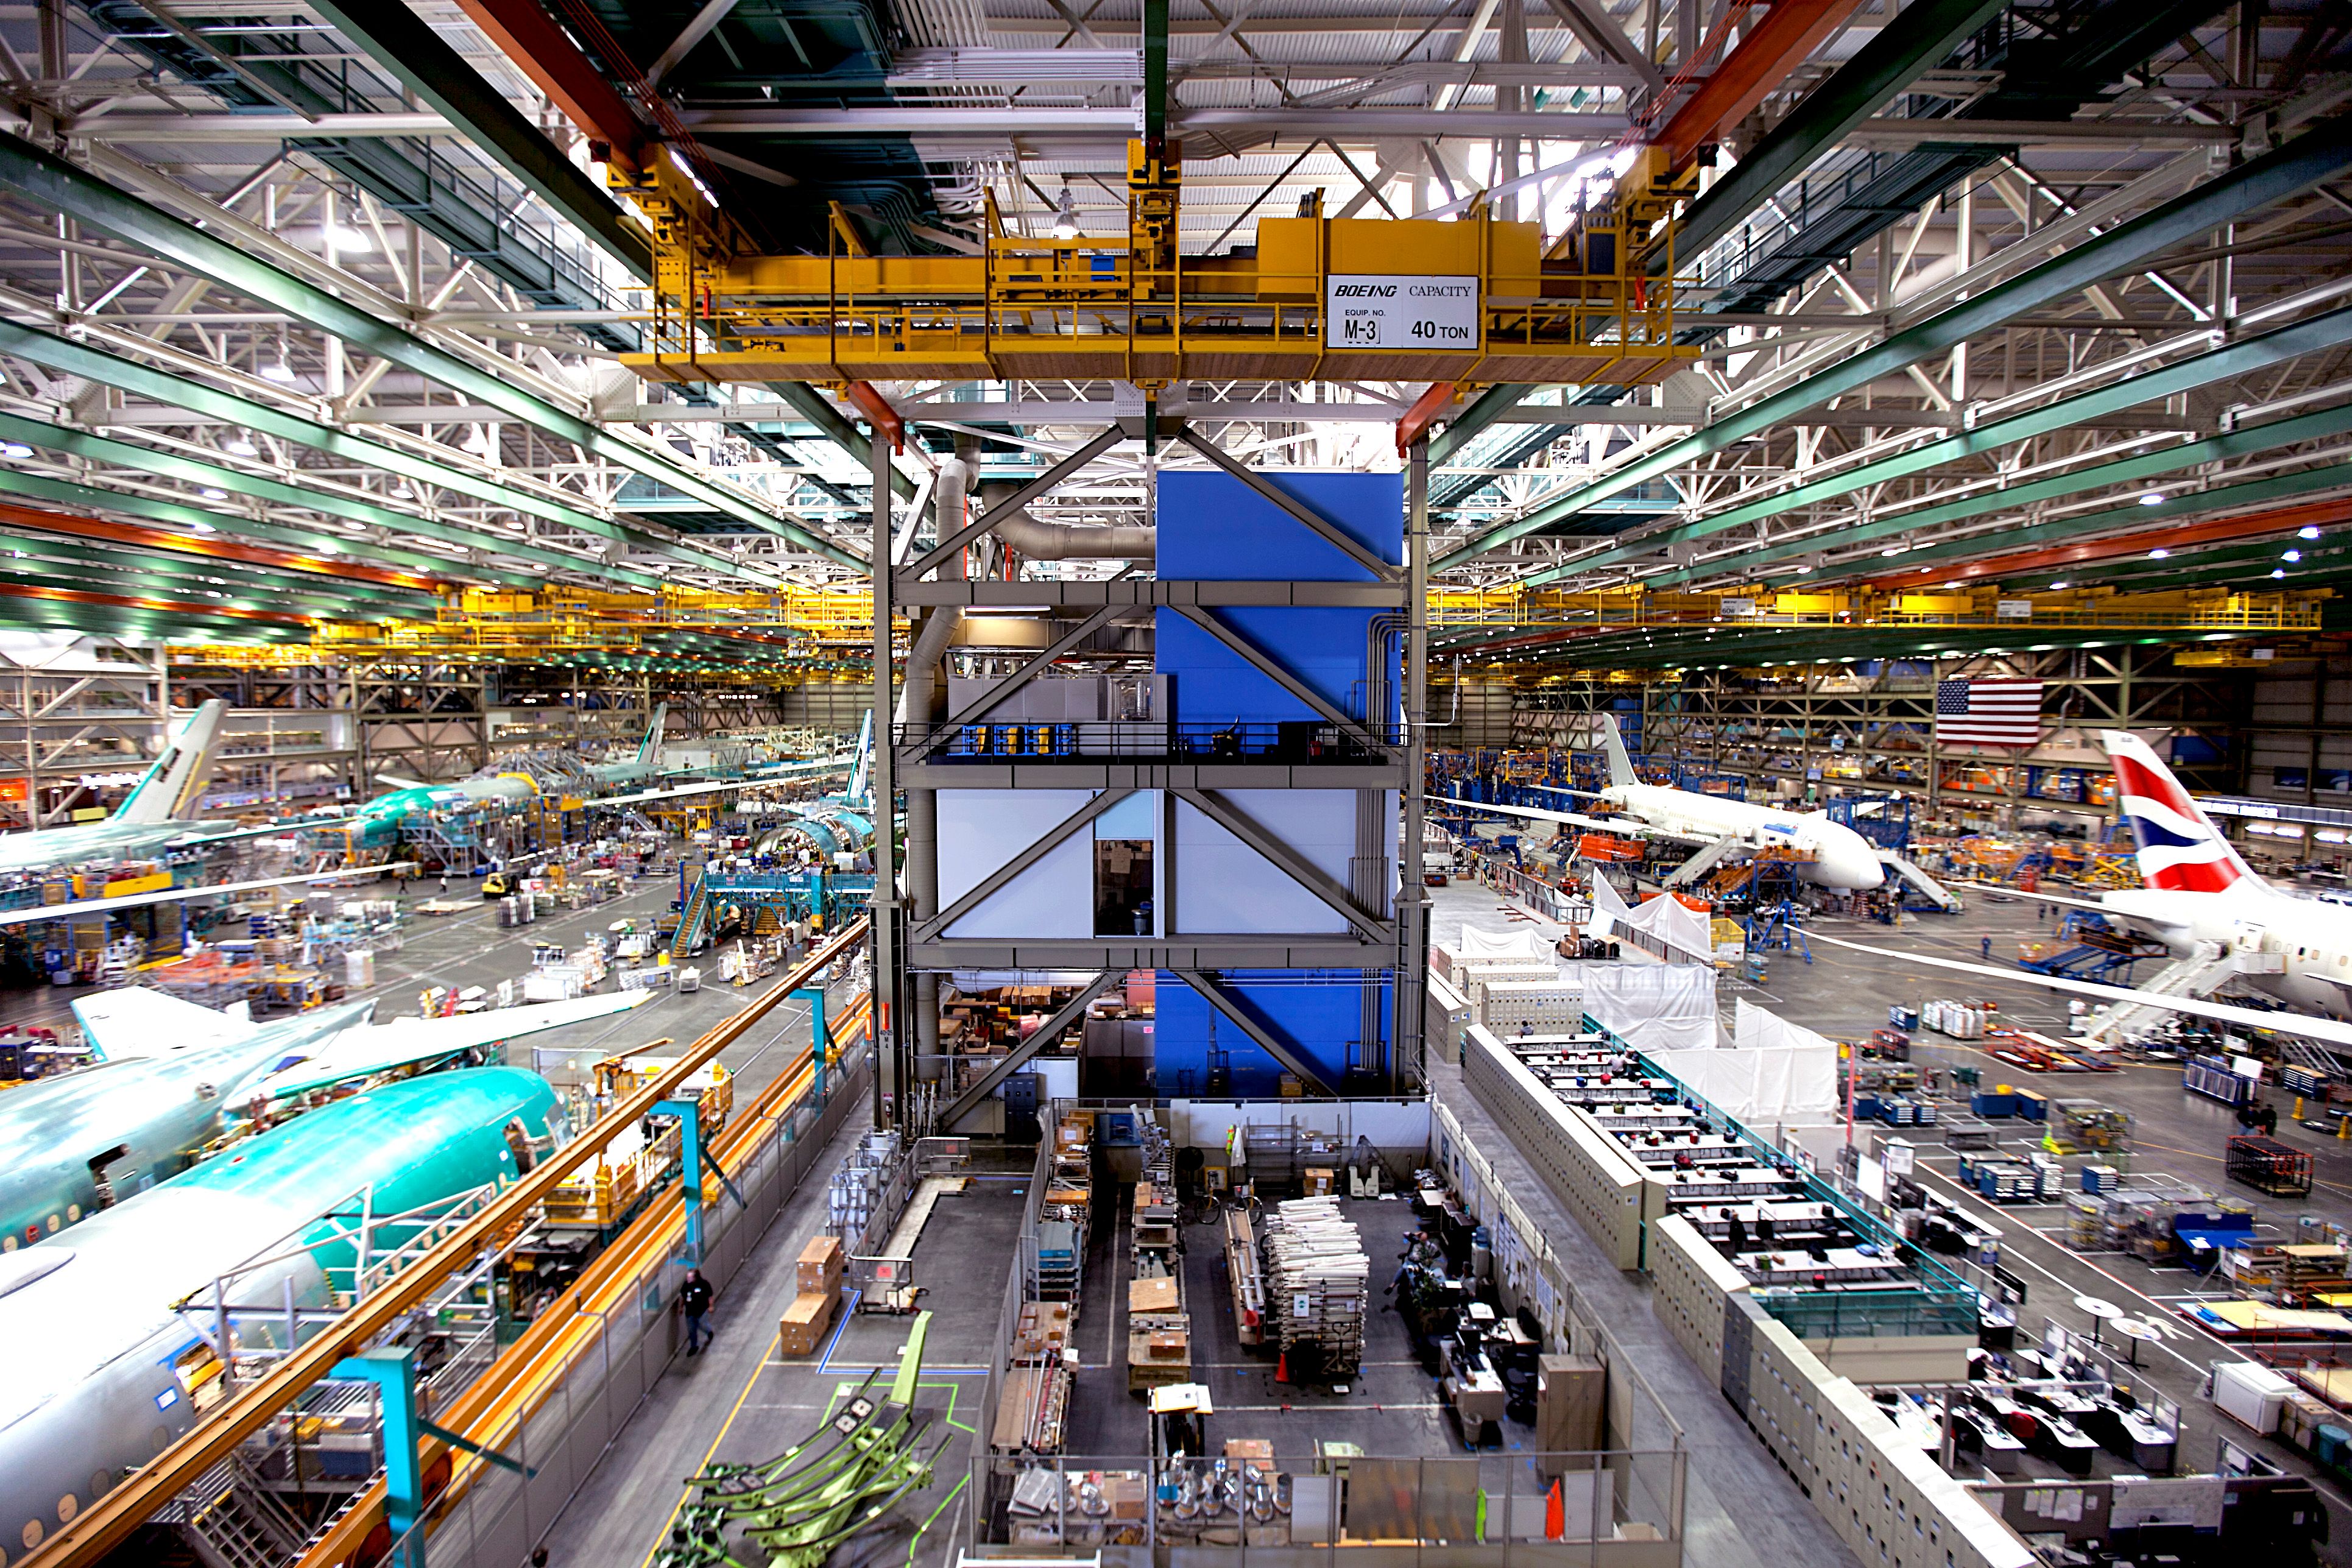 Boeing's Everett factory in Washington JetStar Airways